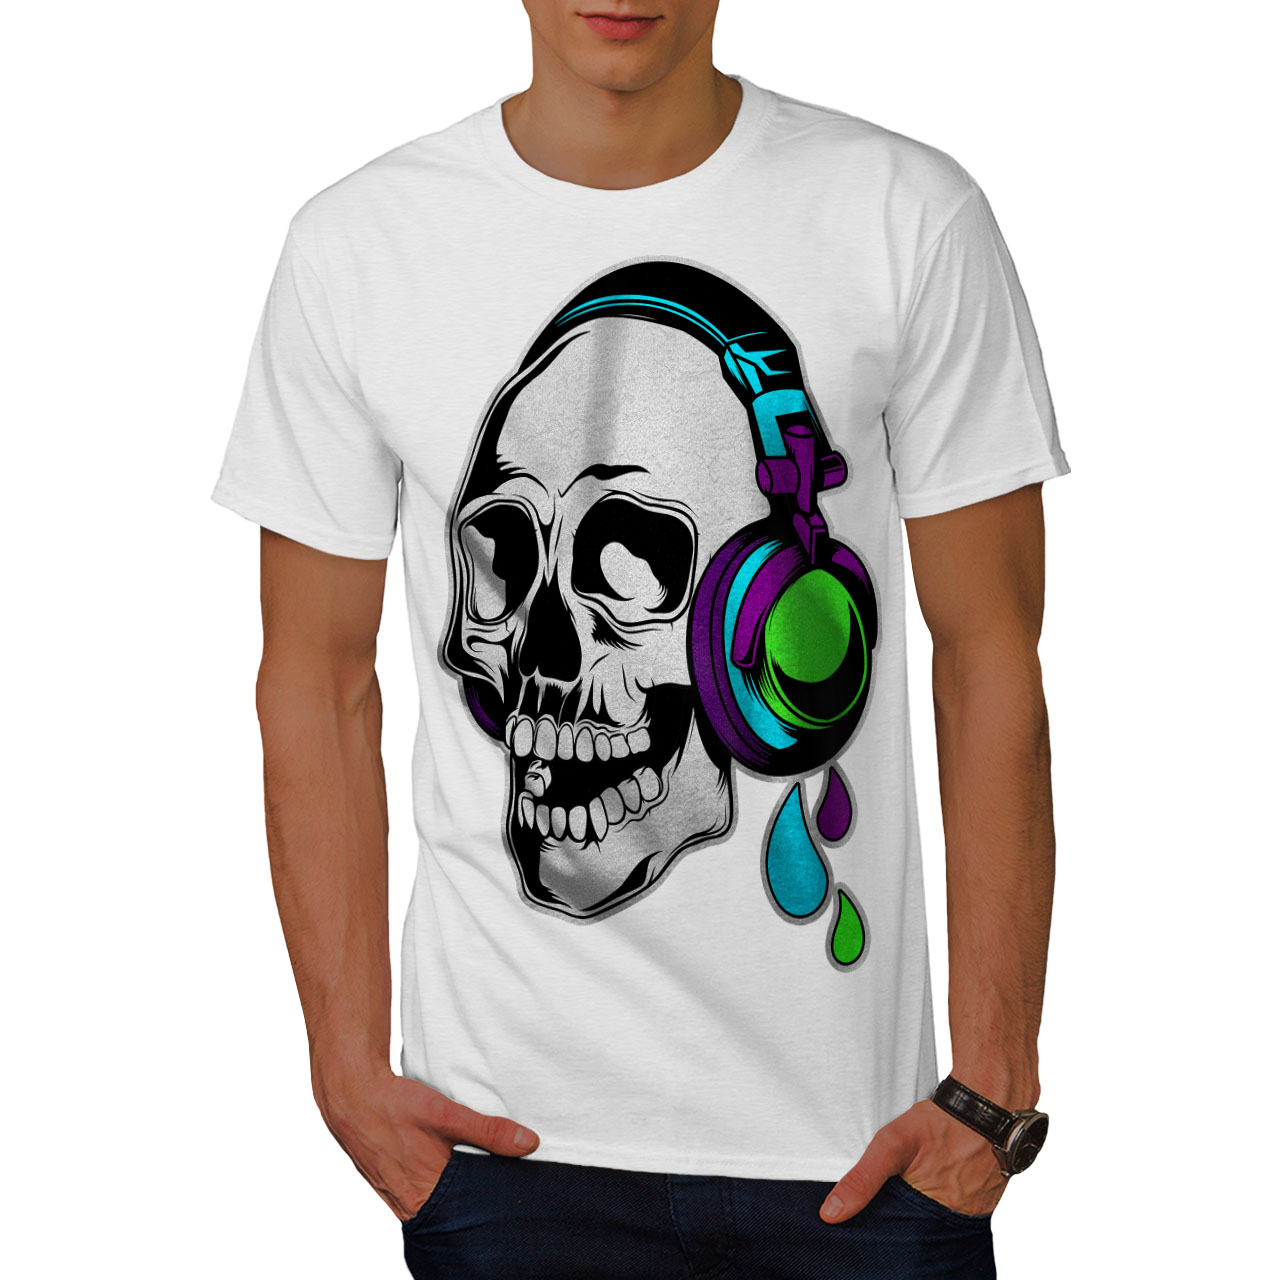 Wellcoda Headphone Music Art Mens Tshirt, Concert Graphic